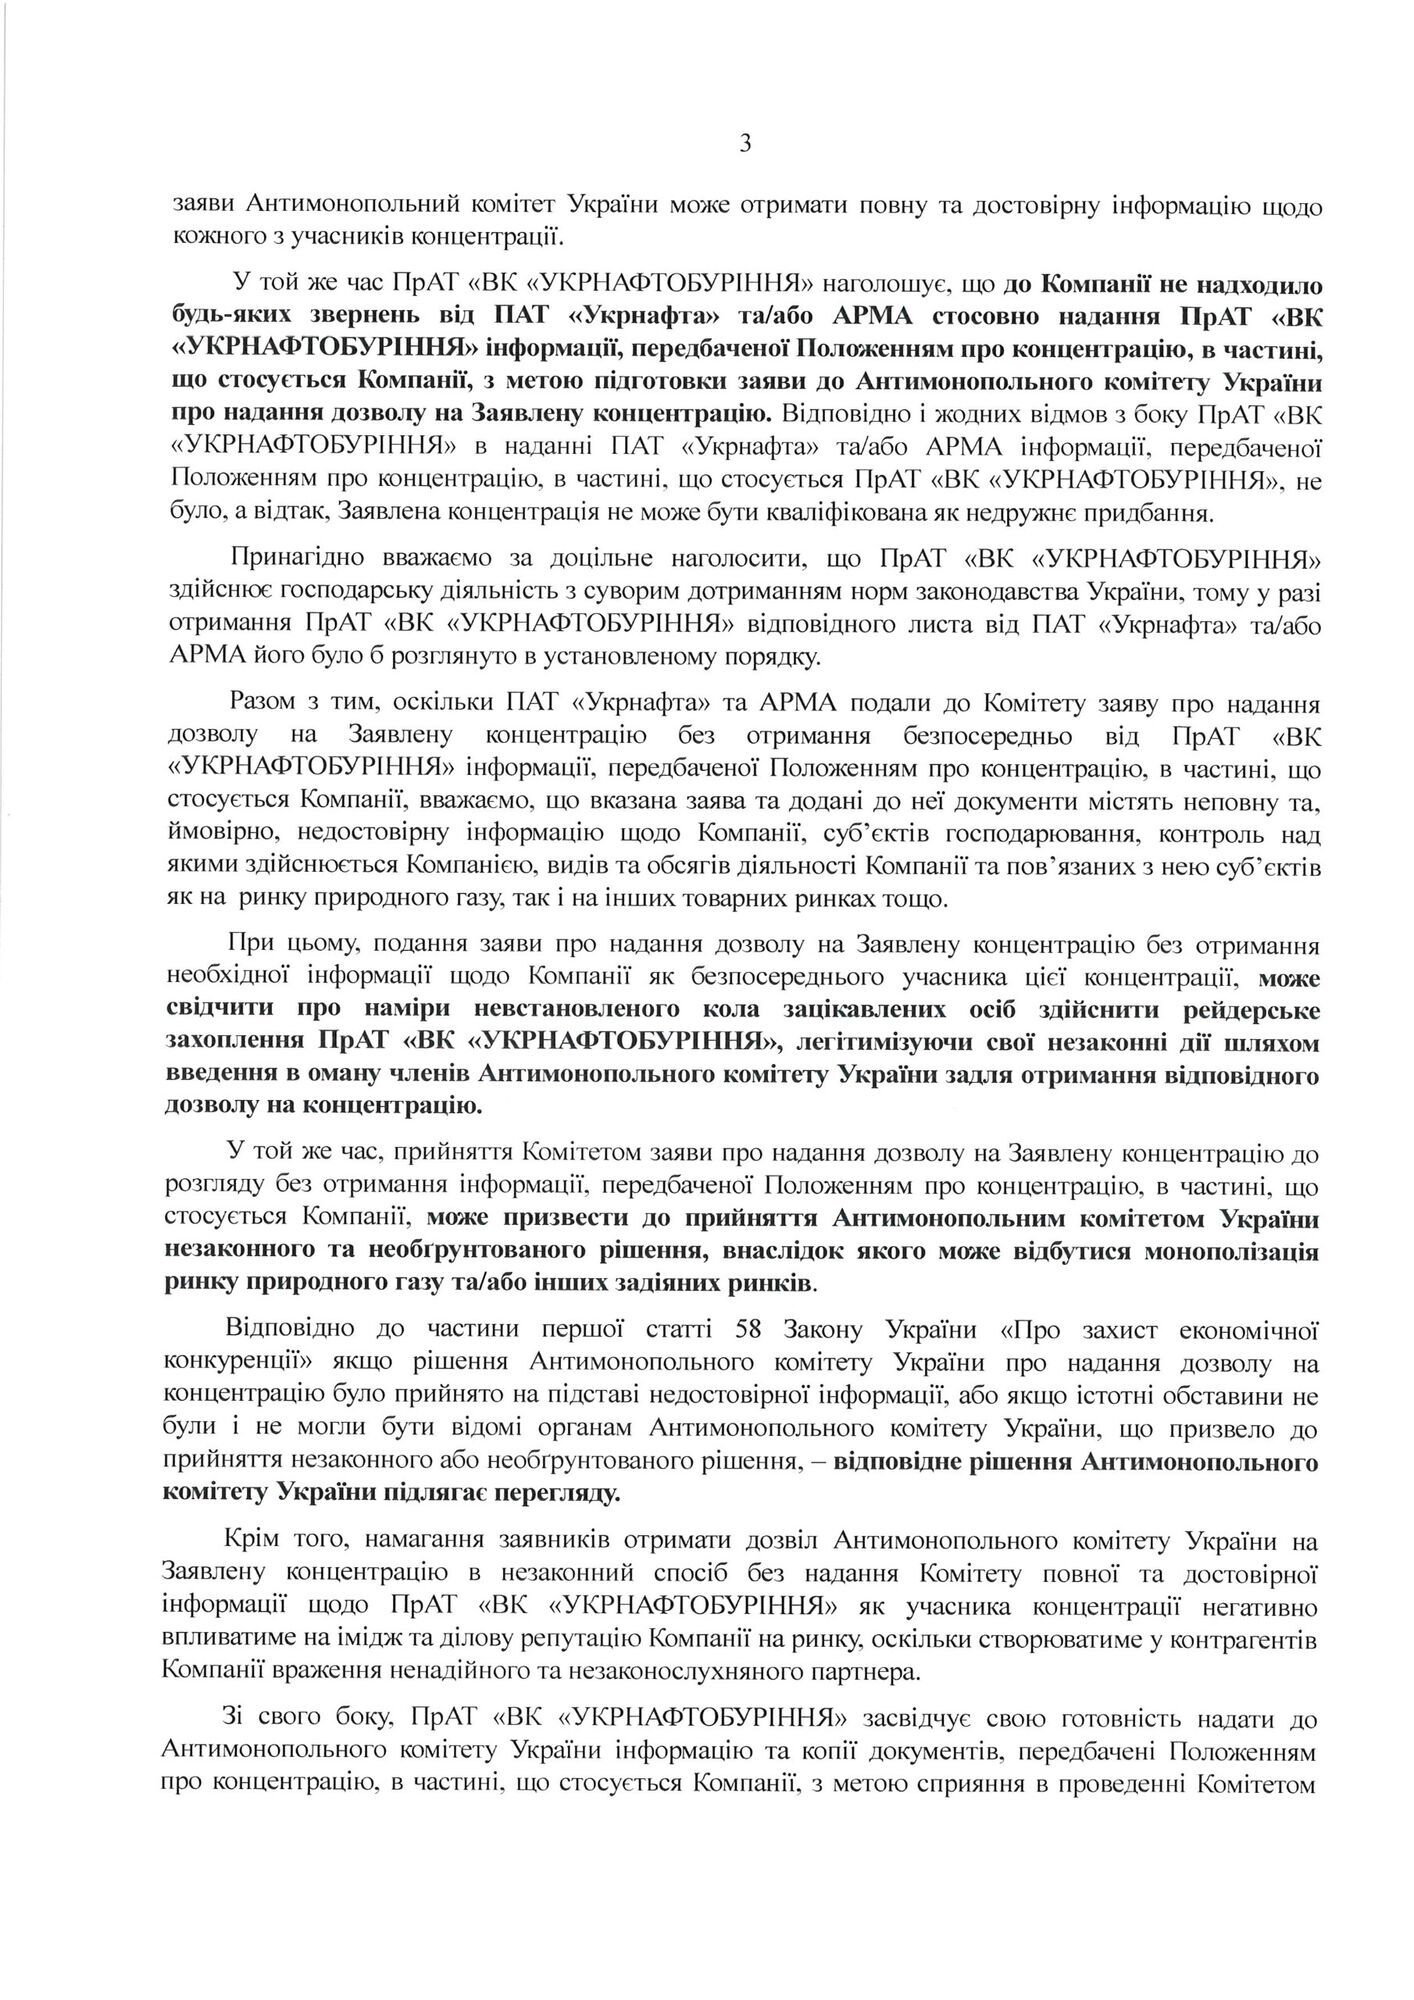 "Укрнафтобуріння" звинуватило АРМА та "Укрнафту" у незаконній конфіскації активів компанії